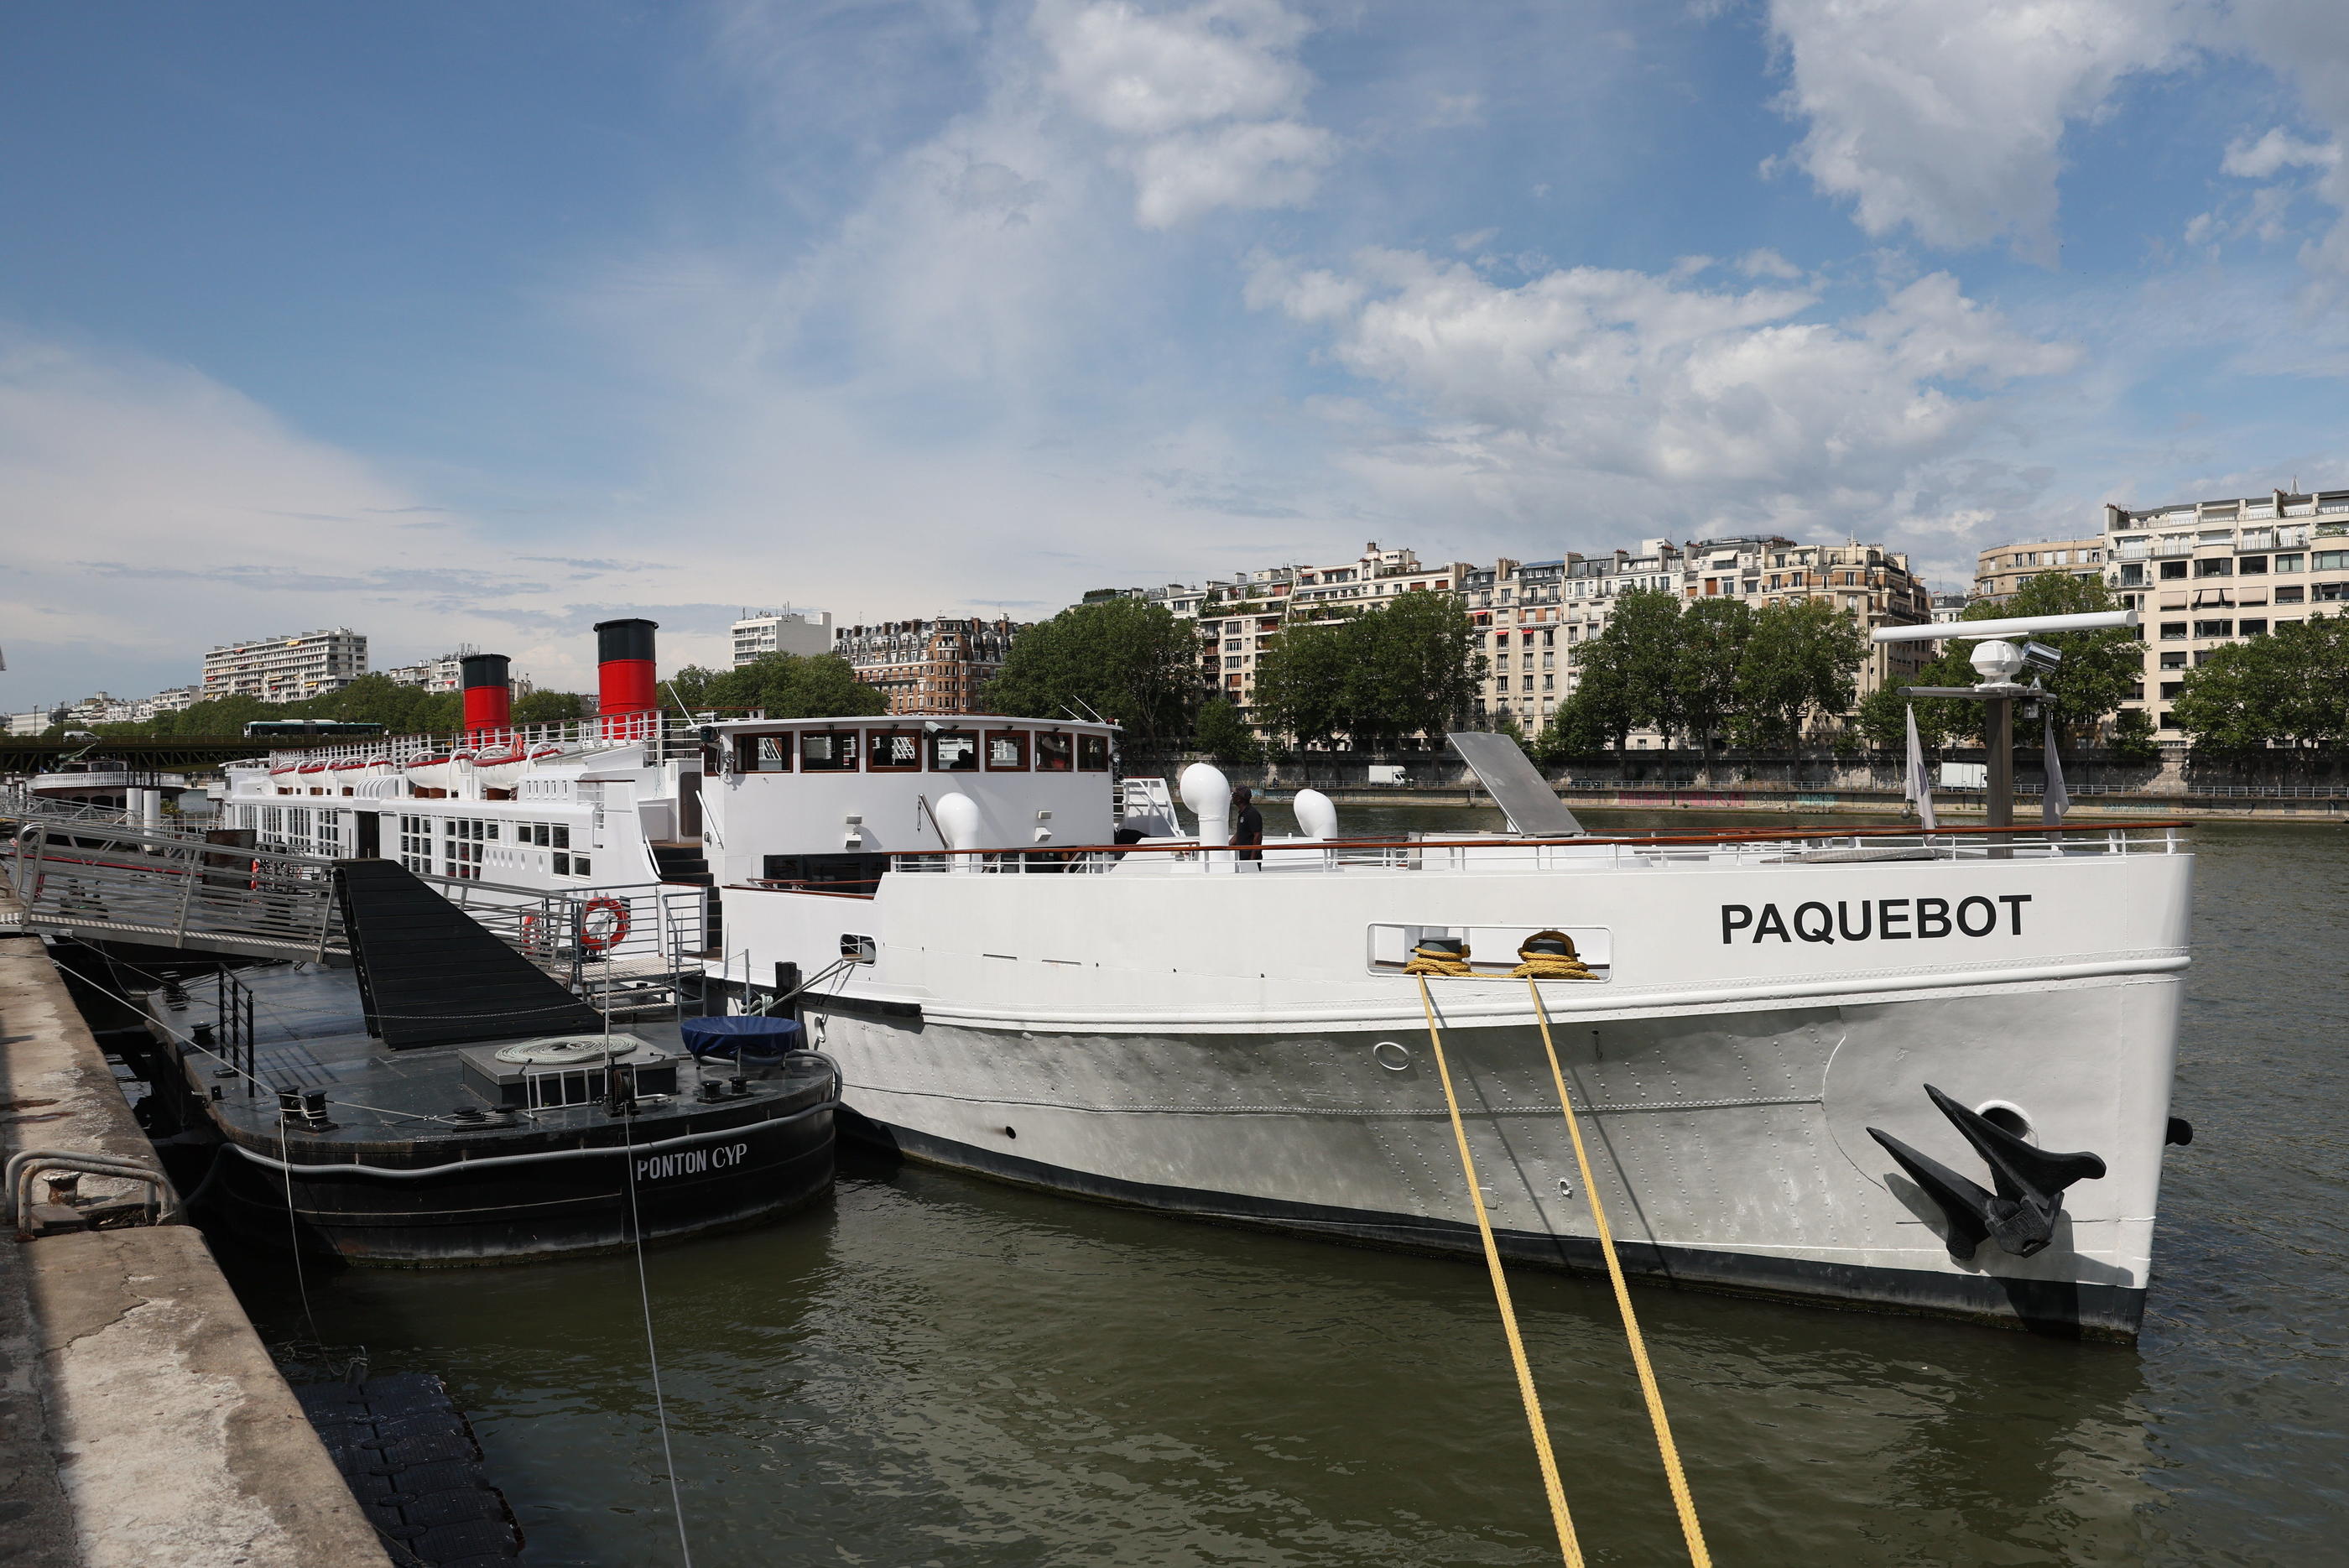 Le «Paquebot», mastodonte de 85 m et 950 tonnes, est le bateau le plus imposant de la flotte qui défilera sur la Seine pour la cérémonie d'ouverture. LP/Arnaud Journois